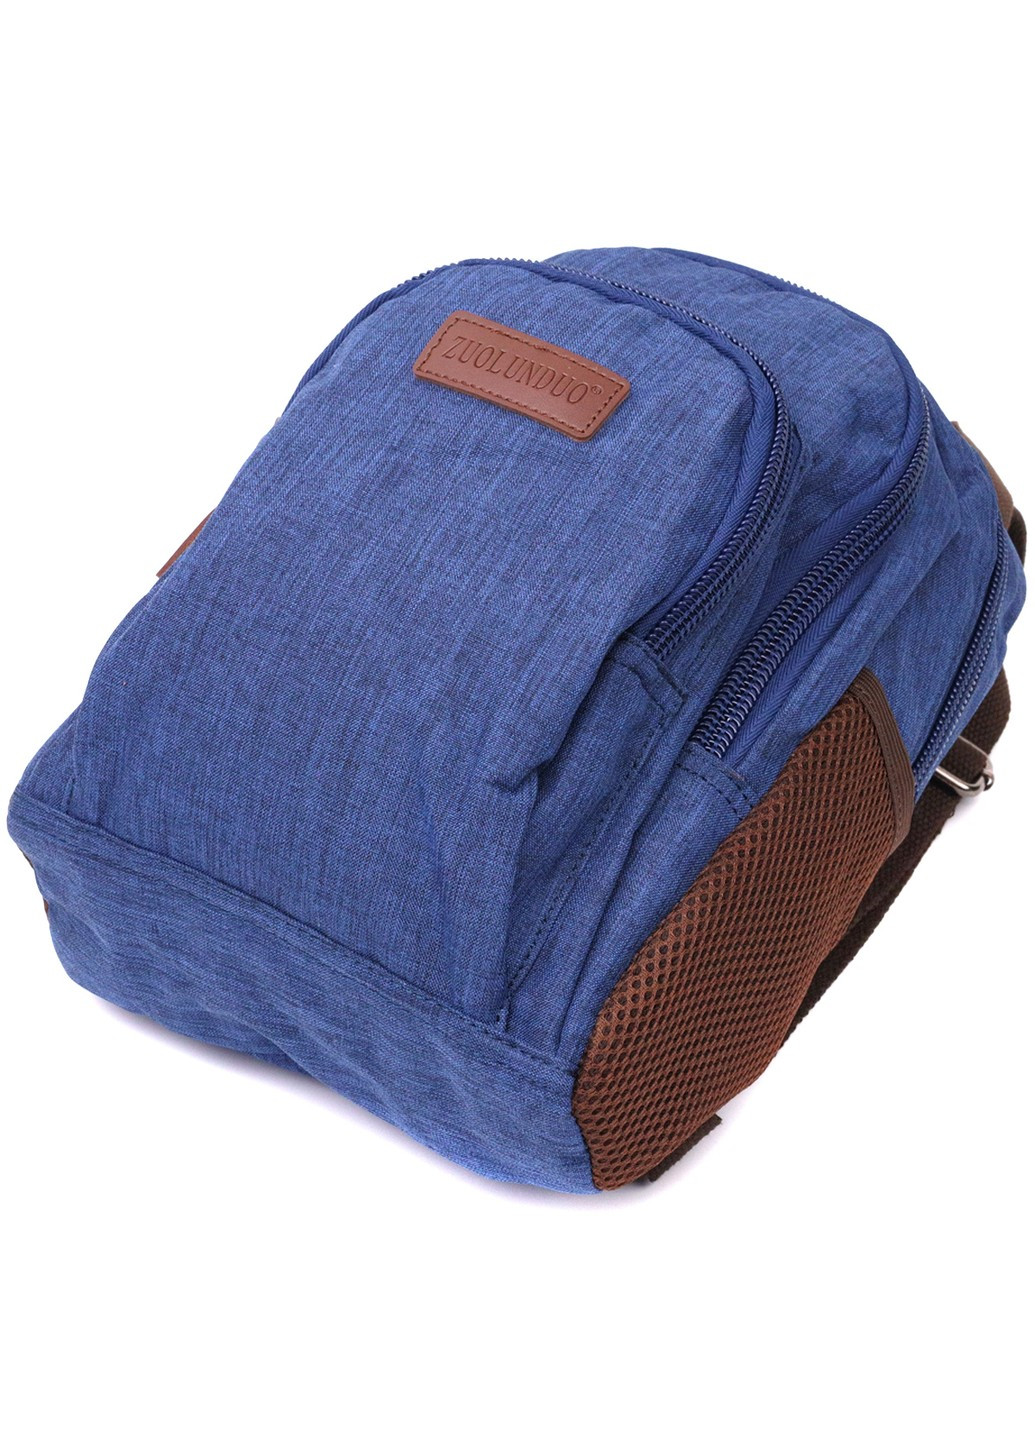 Надежный рюкзак из полиэстера с большим количеством карманов 22146 Синий Vintage (267948730)